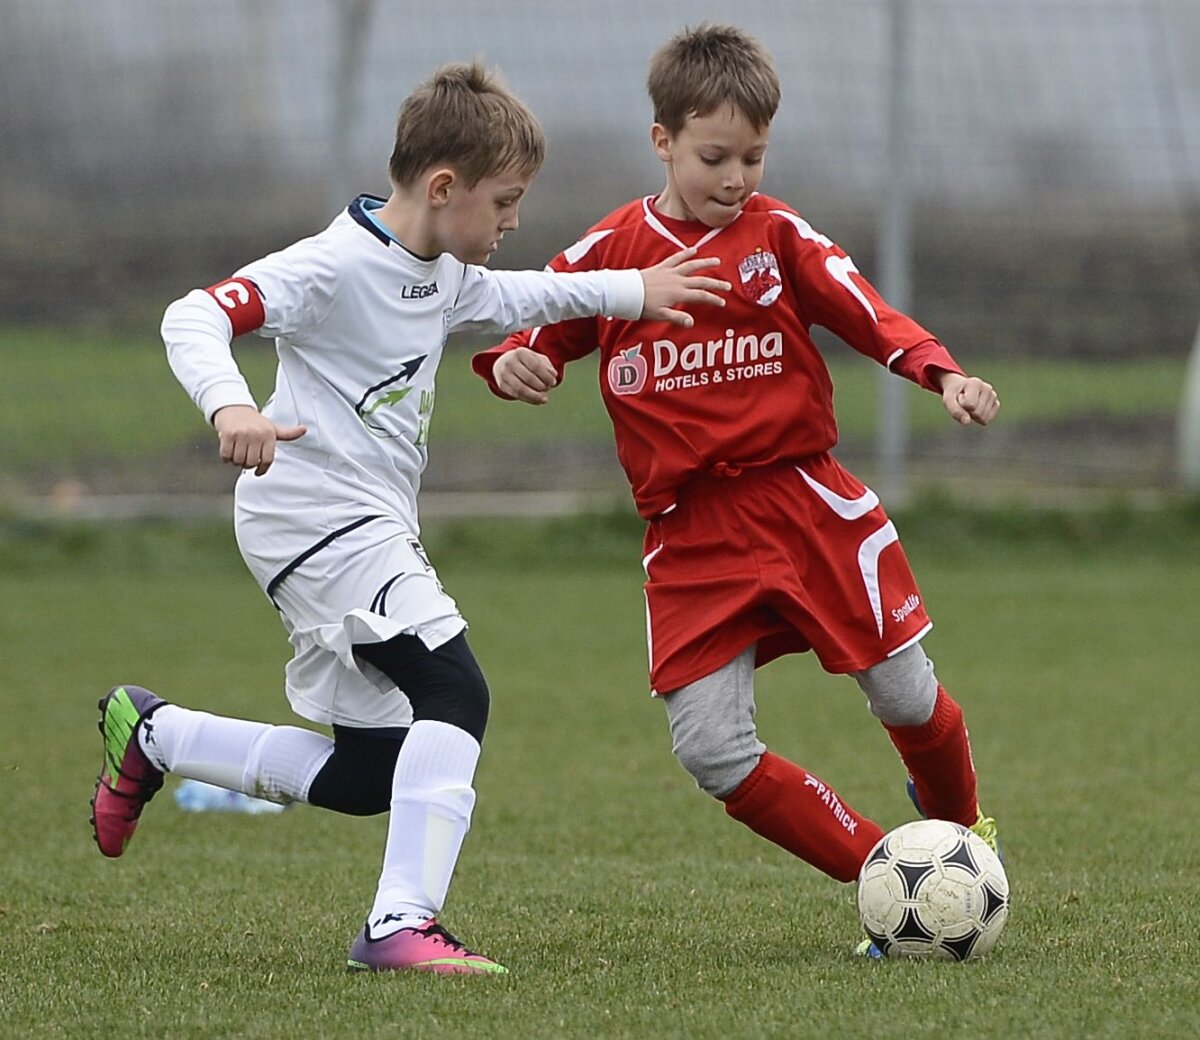 Mitică la mini-fotbal! Dragomir are un fotbalist de viitor în familie :D